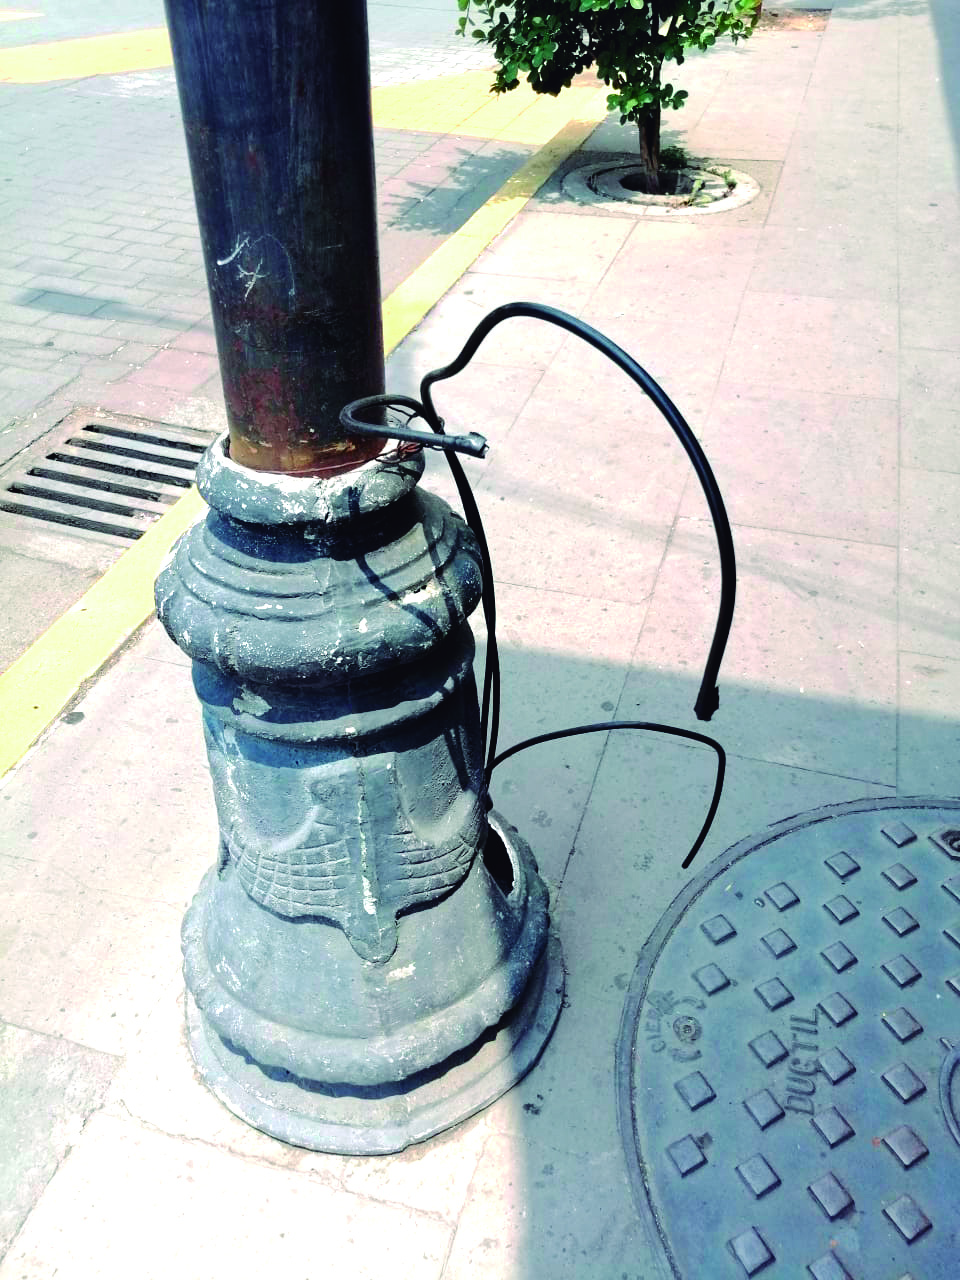 En la calle Parque Juárez casi esquina con Independencia, hay unos cables de luz eléctrica que salen de uno de los postes de los faroles. Si bien tienen la punta aislada, sería mejor, dicen los ciudadanos, que los metieran a la estructura del poste y así nulificar todo riesgo de recibir una descarga eléctrica.